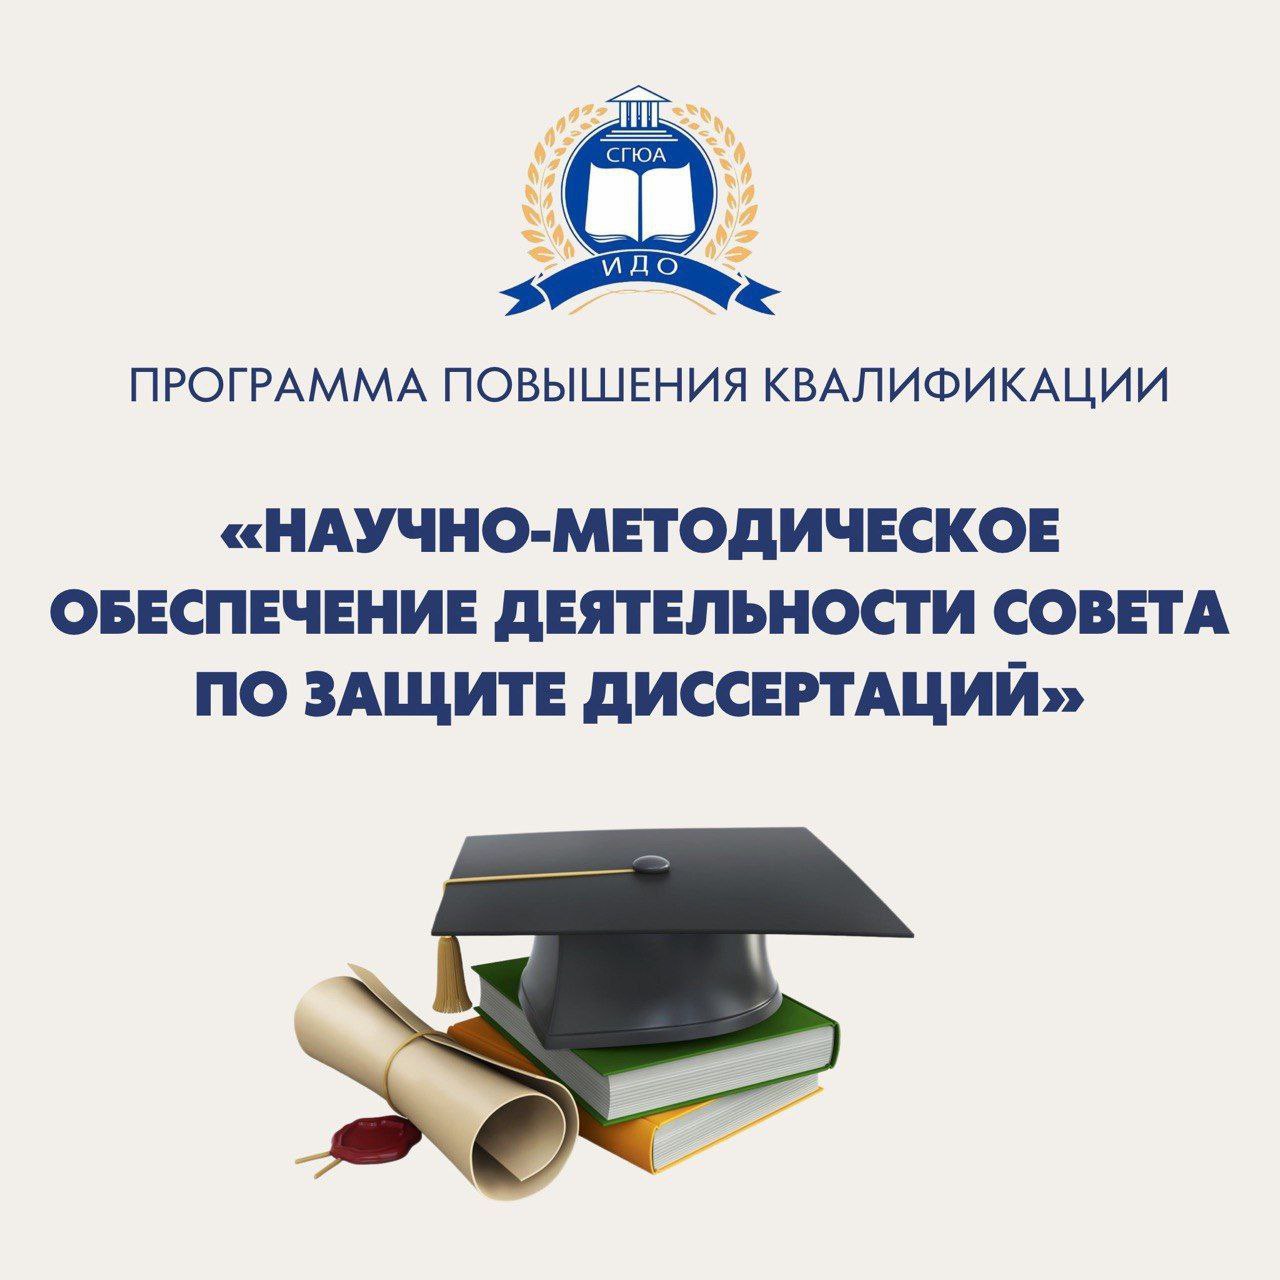 Программа повышения квалификации  «Научно-методическое обеспечение деятельности совета по защите диссертаций (диссертационного совета)»